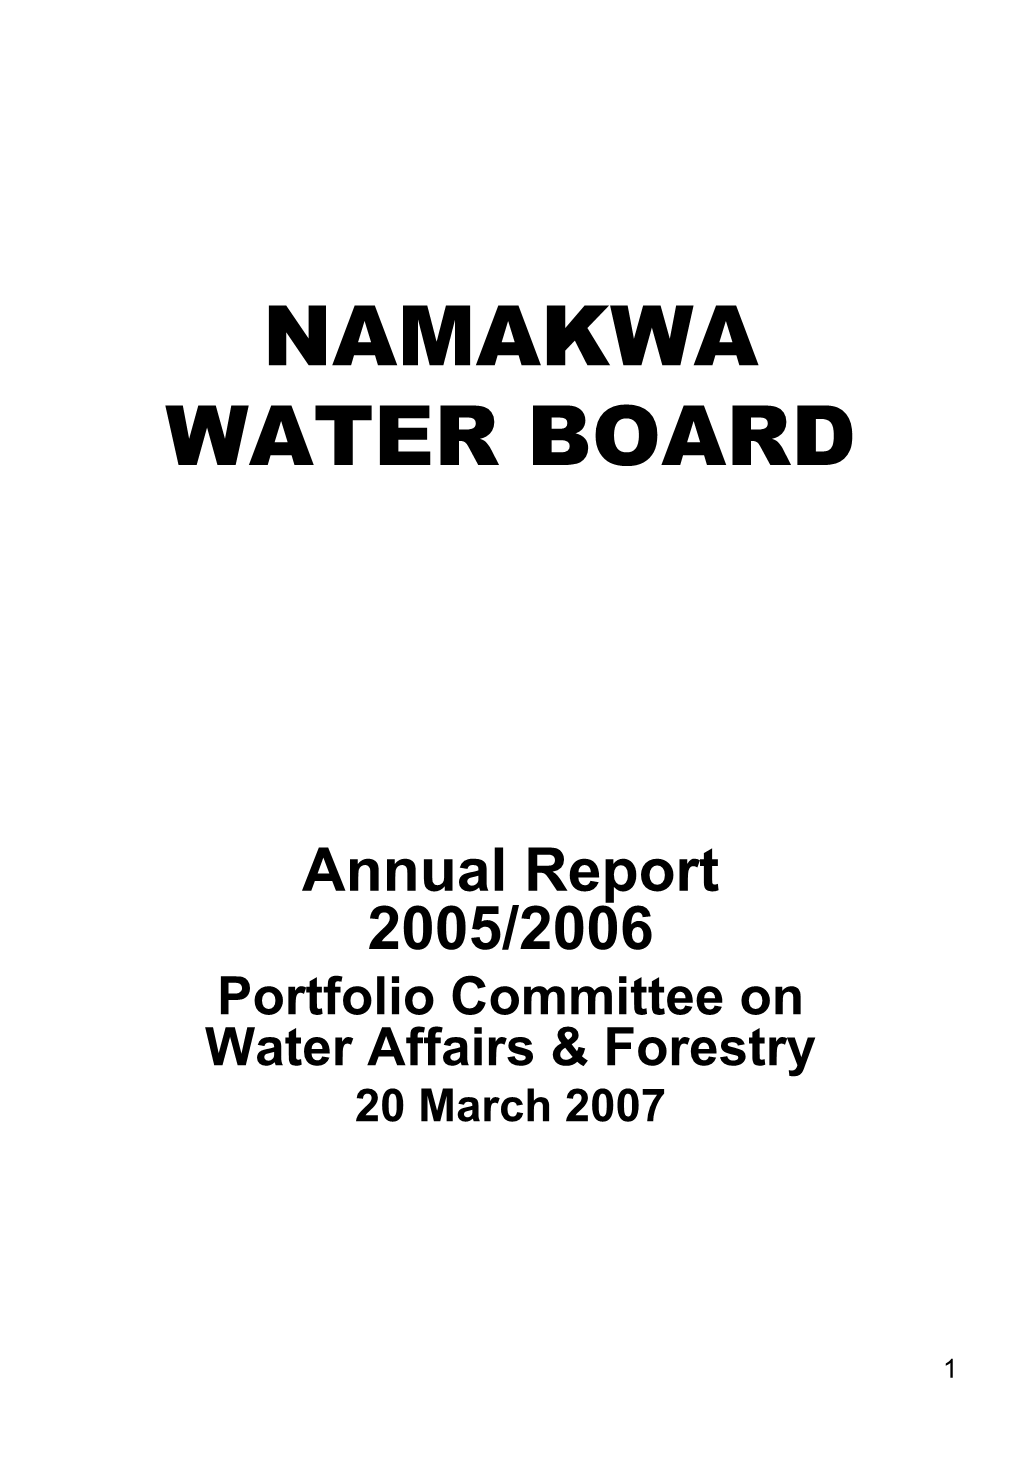 Namakwa Water Board